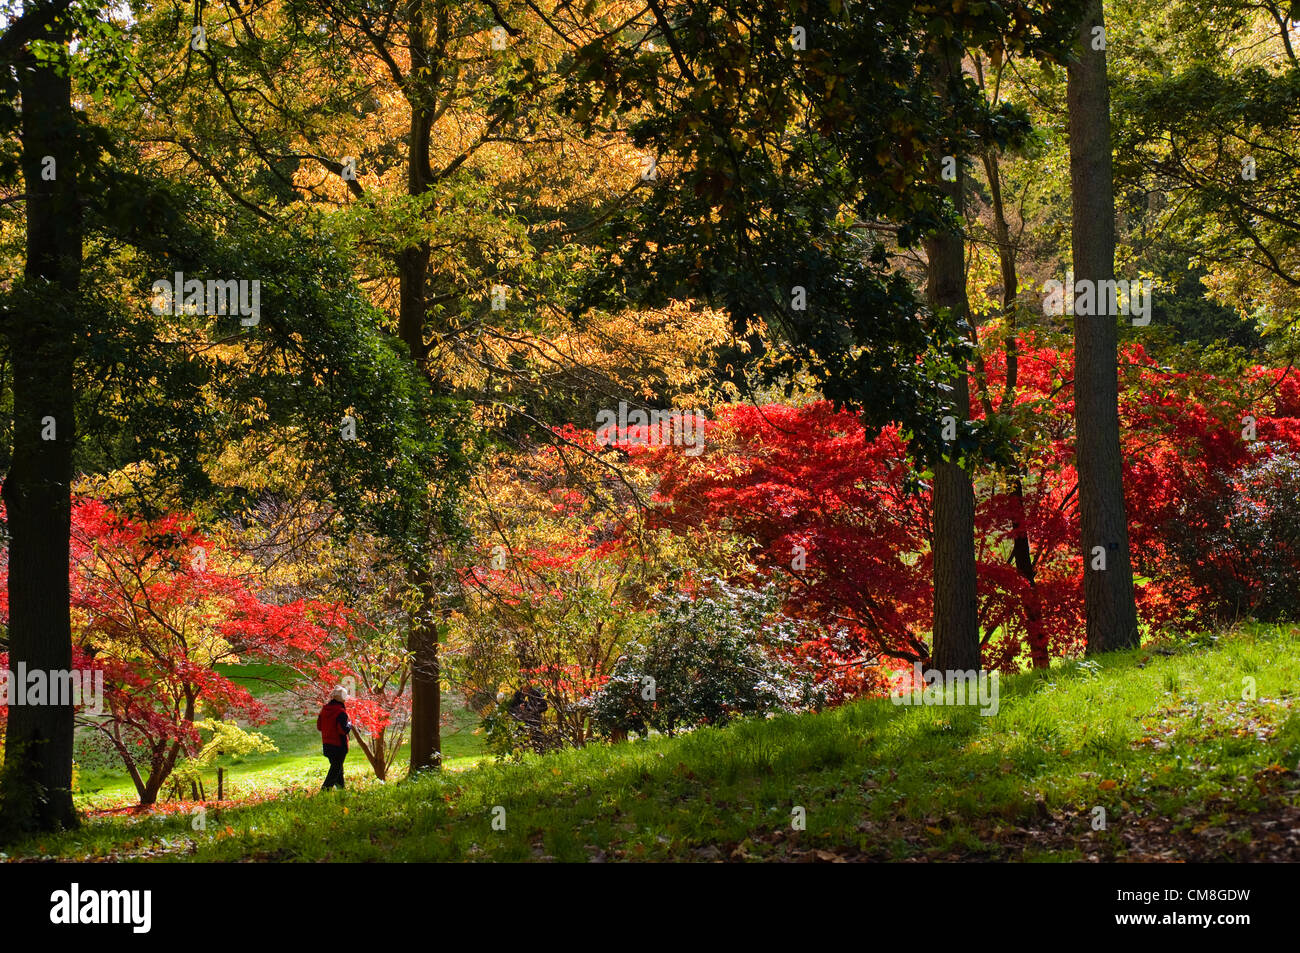 27 octobre 2012 UK Batsford Arboretum Automne Couleur. Feuilles rouges des érables japonais brillent dans le soleil, Batsford à Nr Moreton in Marsh Gloucestershire. Banque D'Images